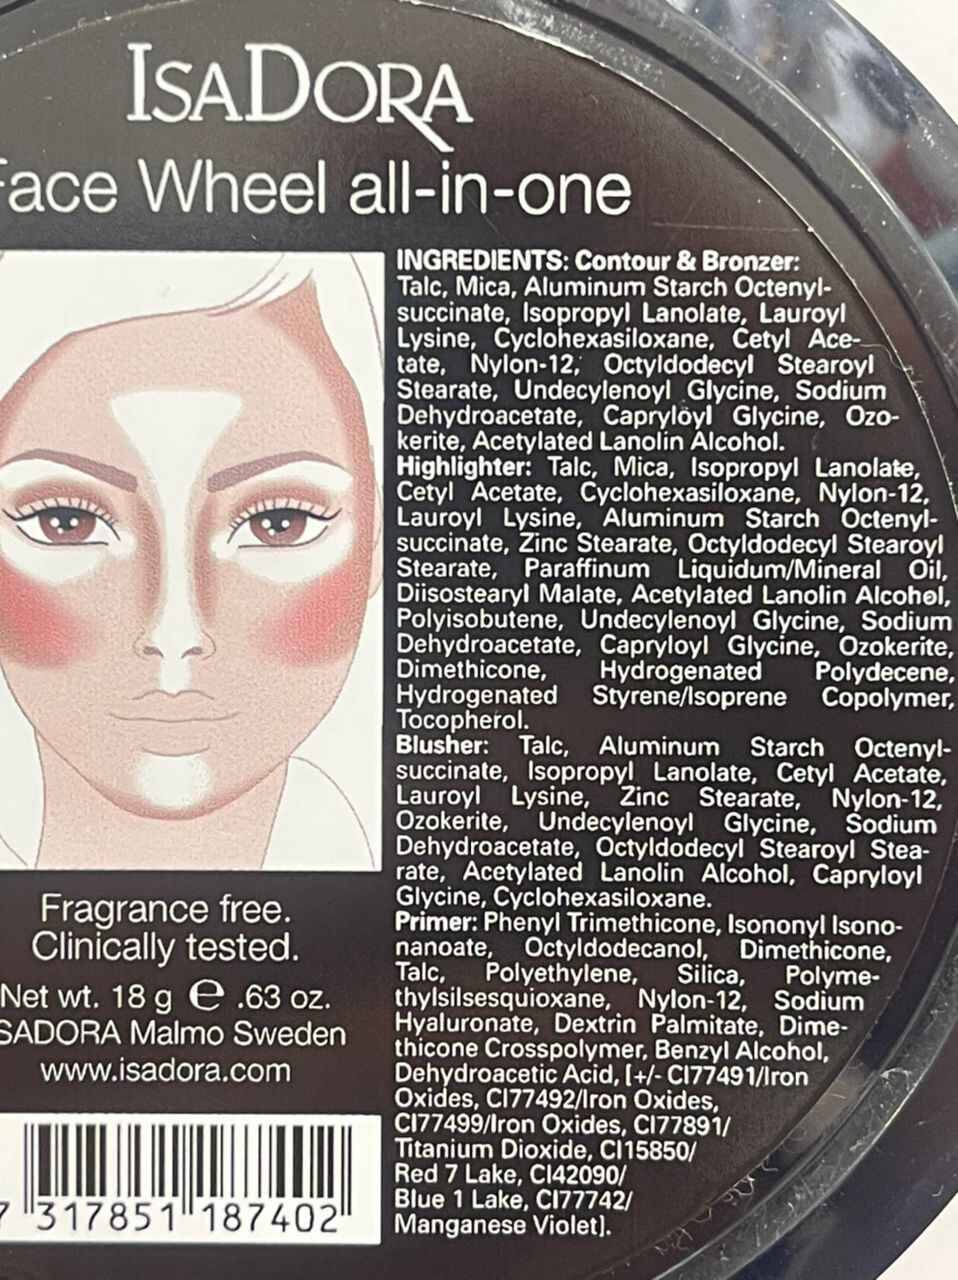 پالت آرایش صورت ایزادورا ISADORA مدل FACE WHEEL | رژ گونه، برنزر، هایلایتر، کانتور، پرایمر